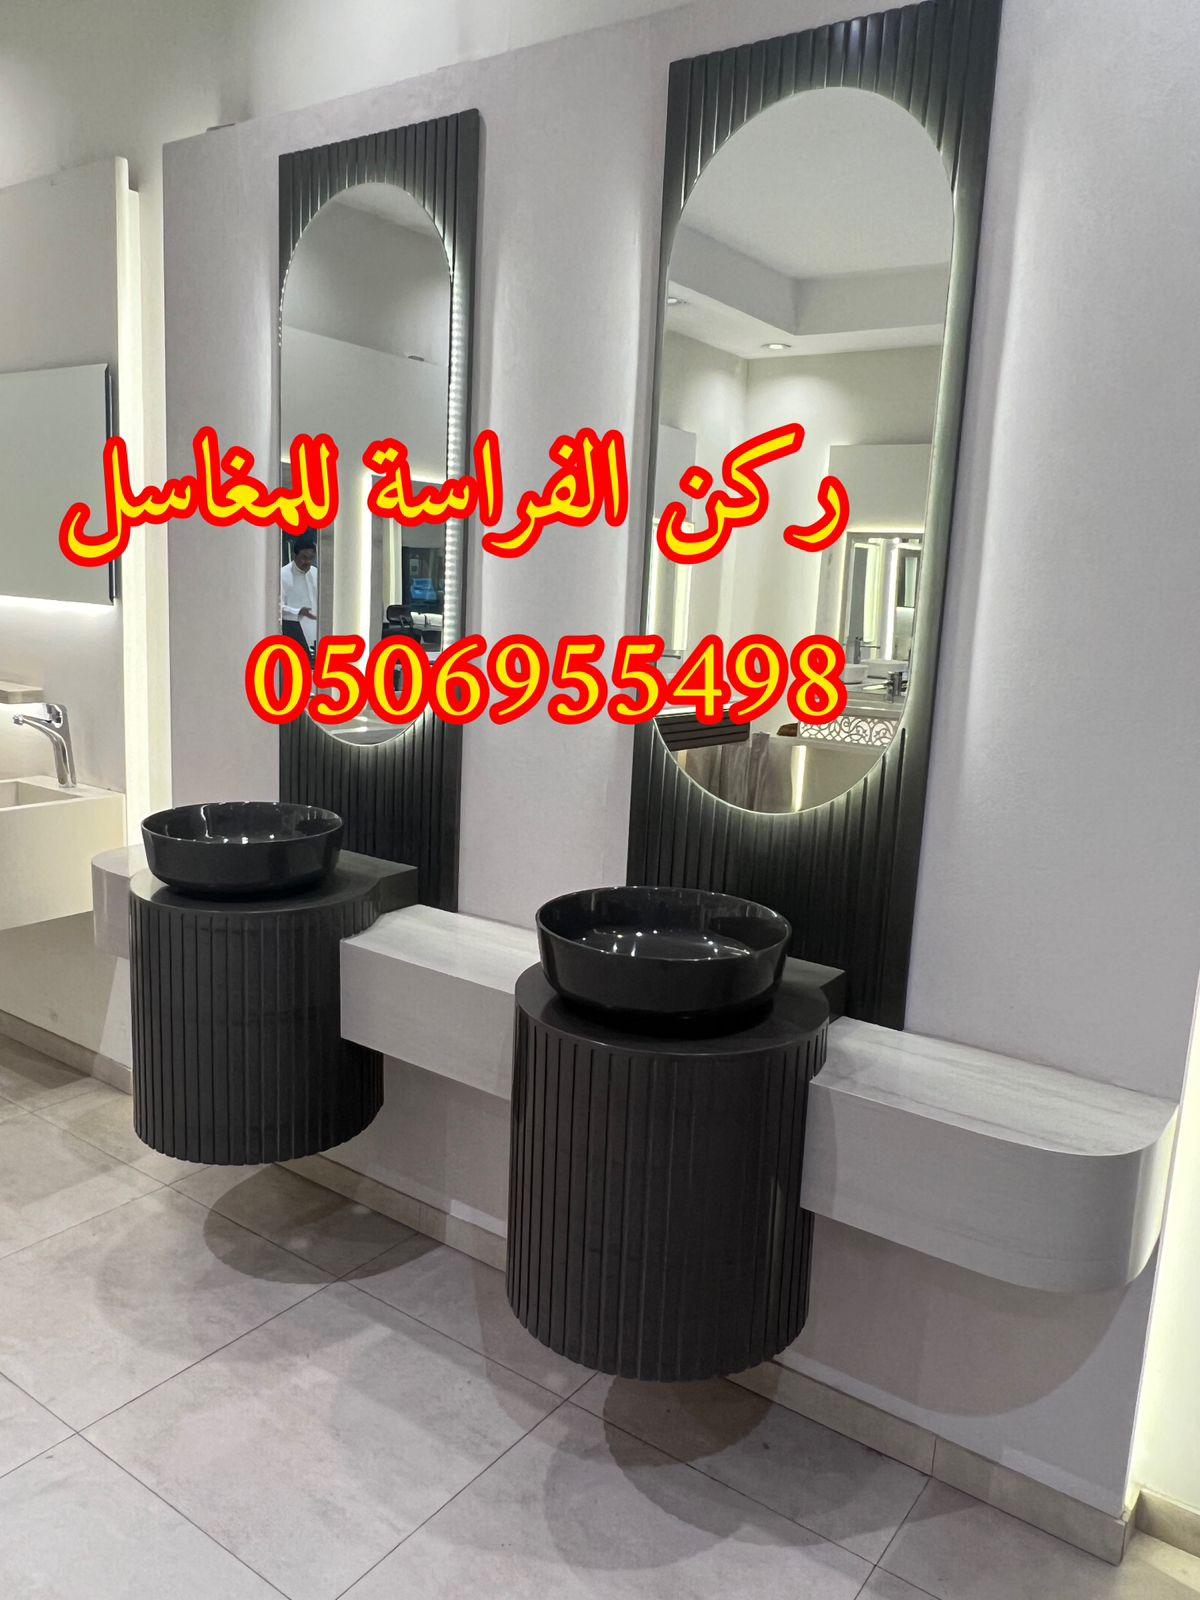 تصاميم مغاسل رخام للمجالس في الرياض,0506955498 495869330